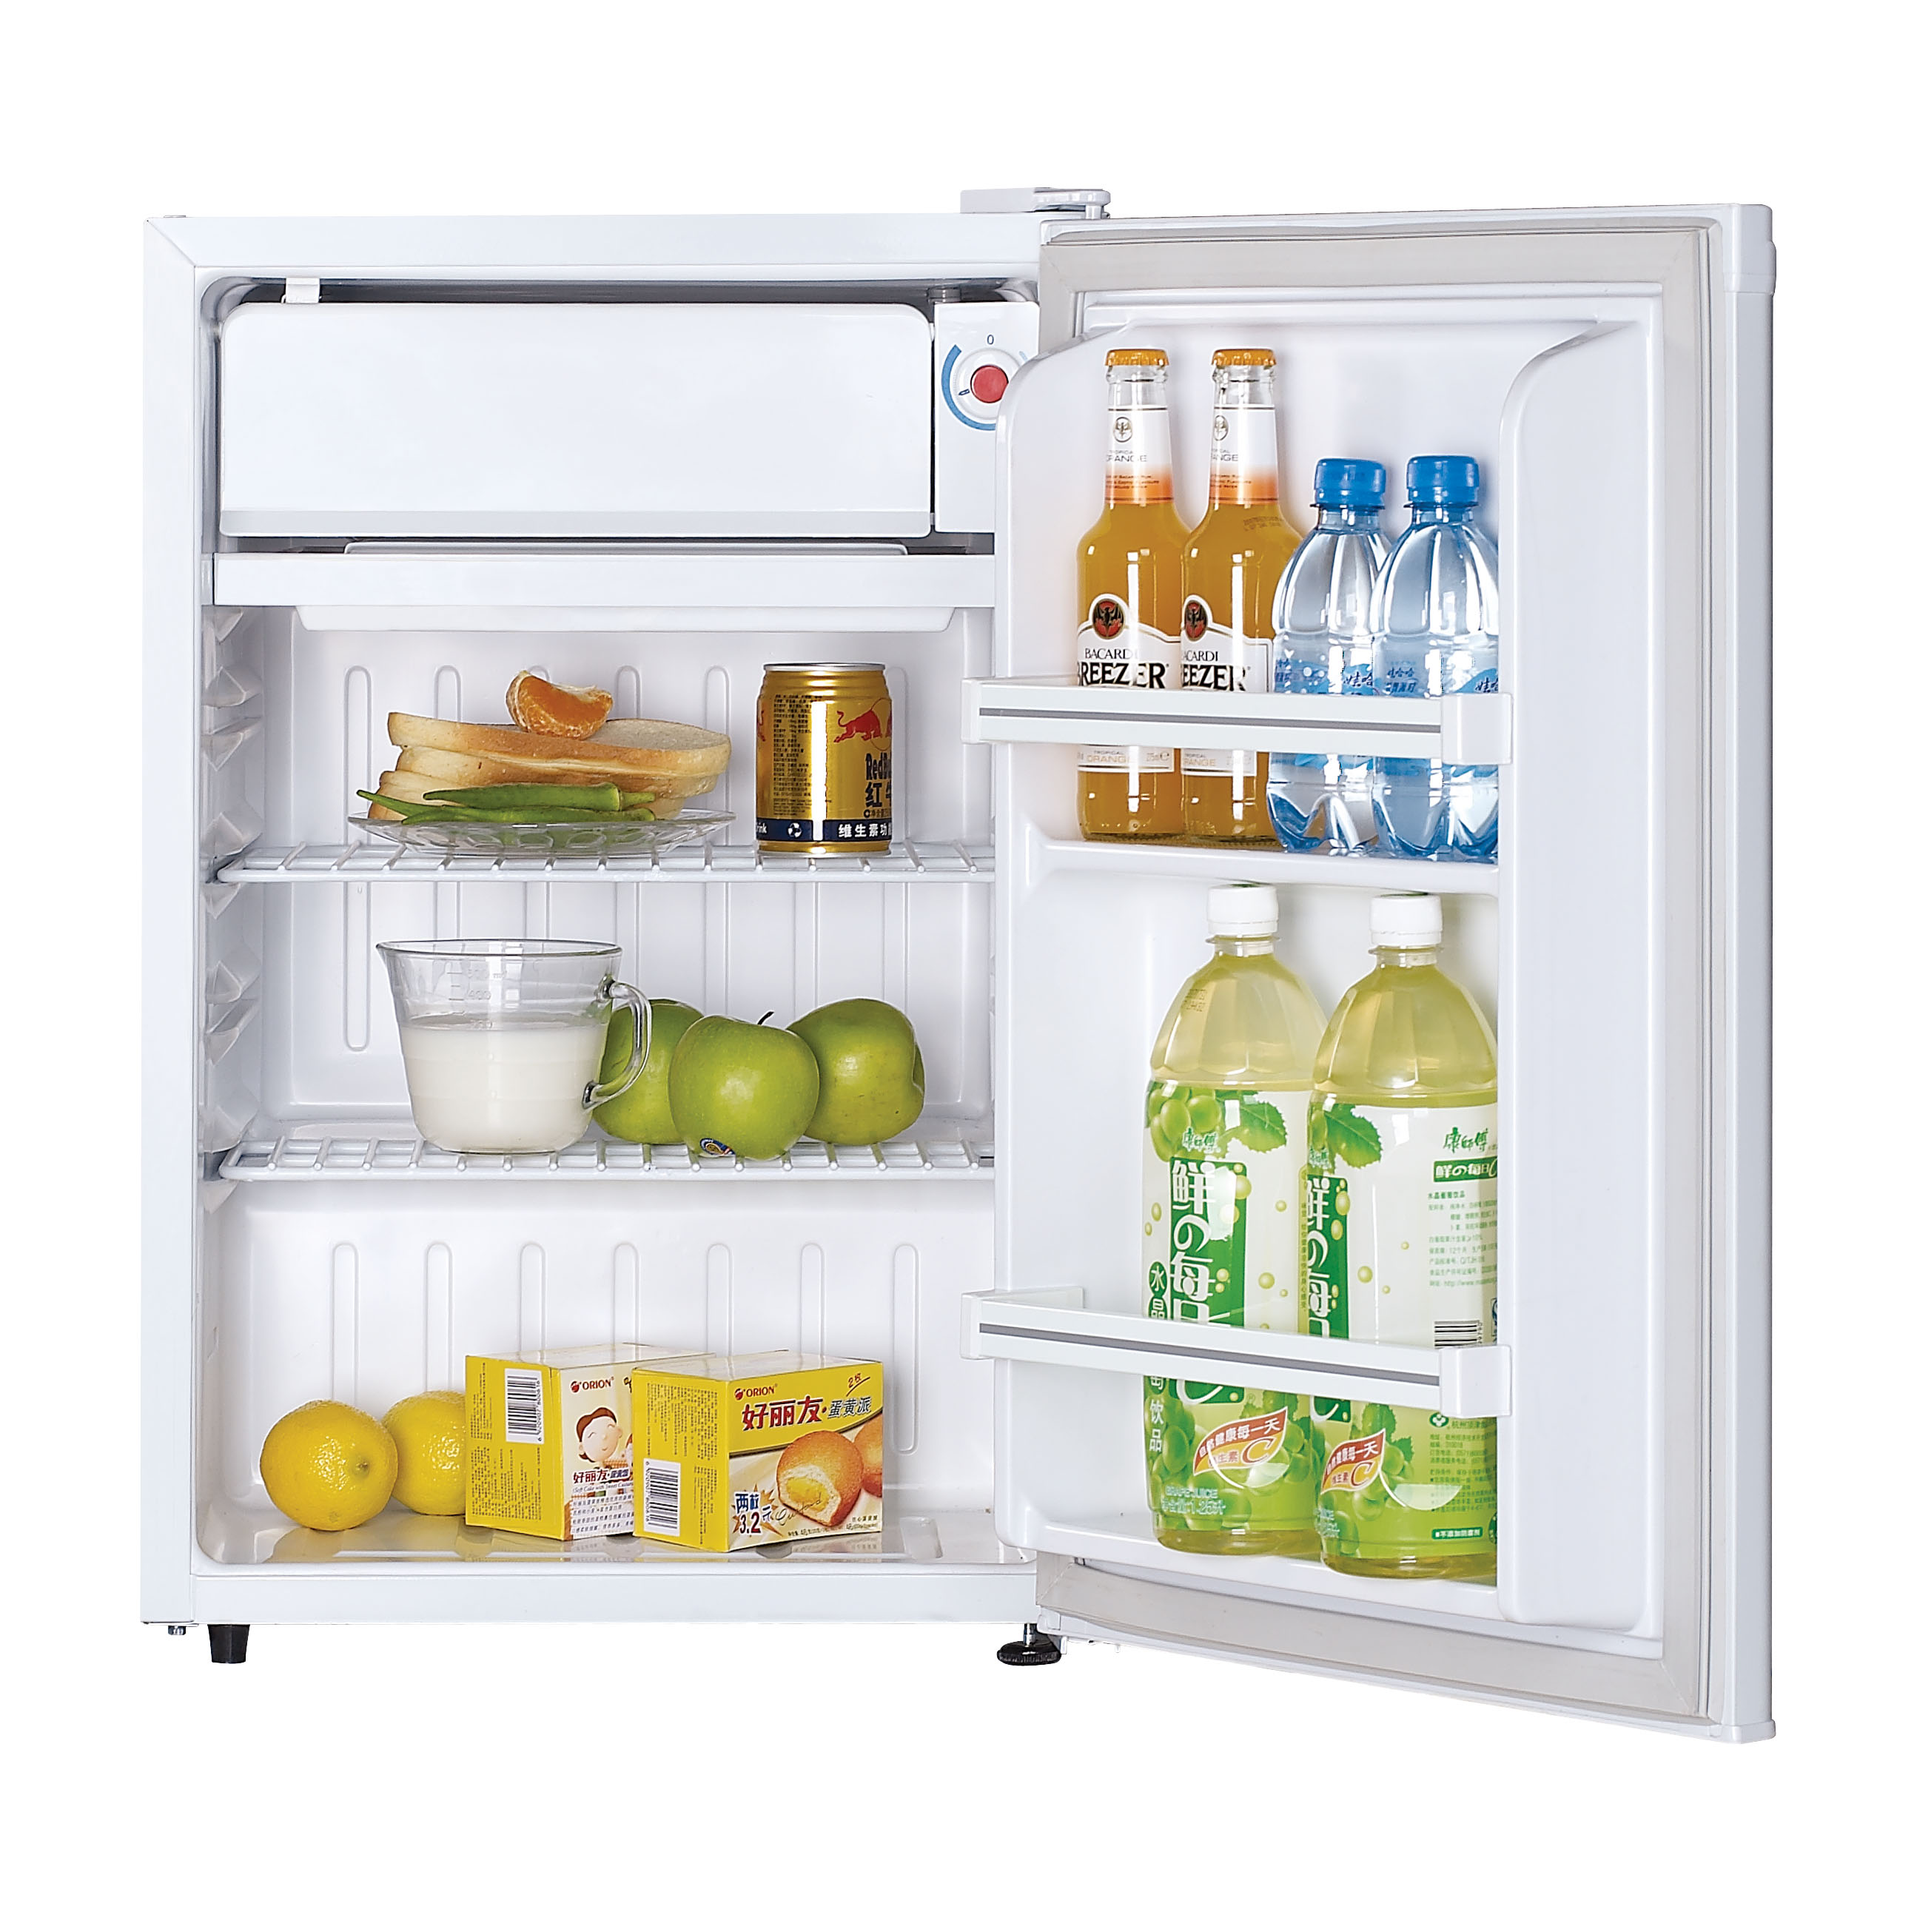 В каких магазинах можно купить холодильники. Холодильник Renova rid-80w. Холодильник Willmark XR-80w. Холодильник Bravo XR-80s. Холодильник Браво XR 80.